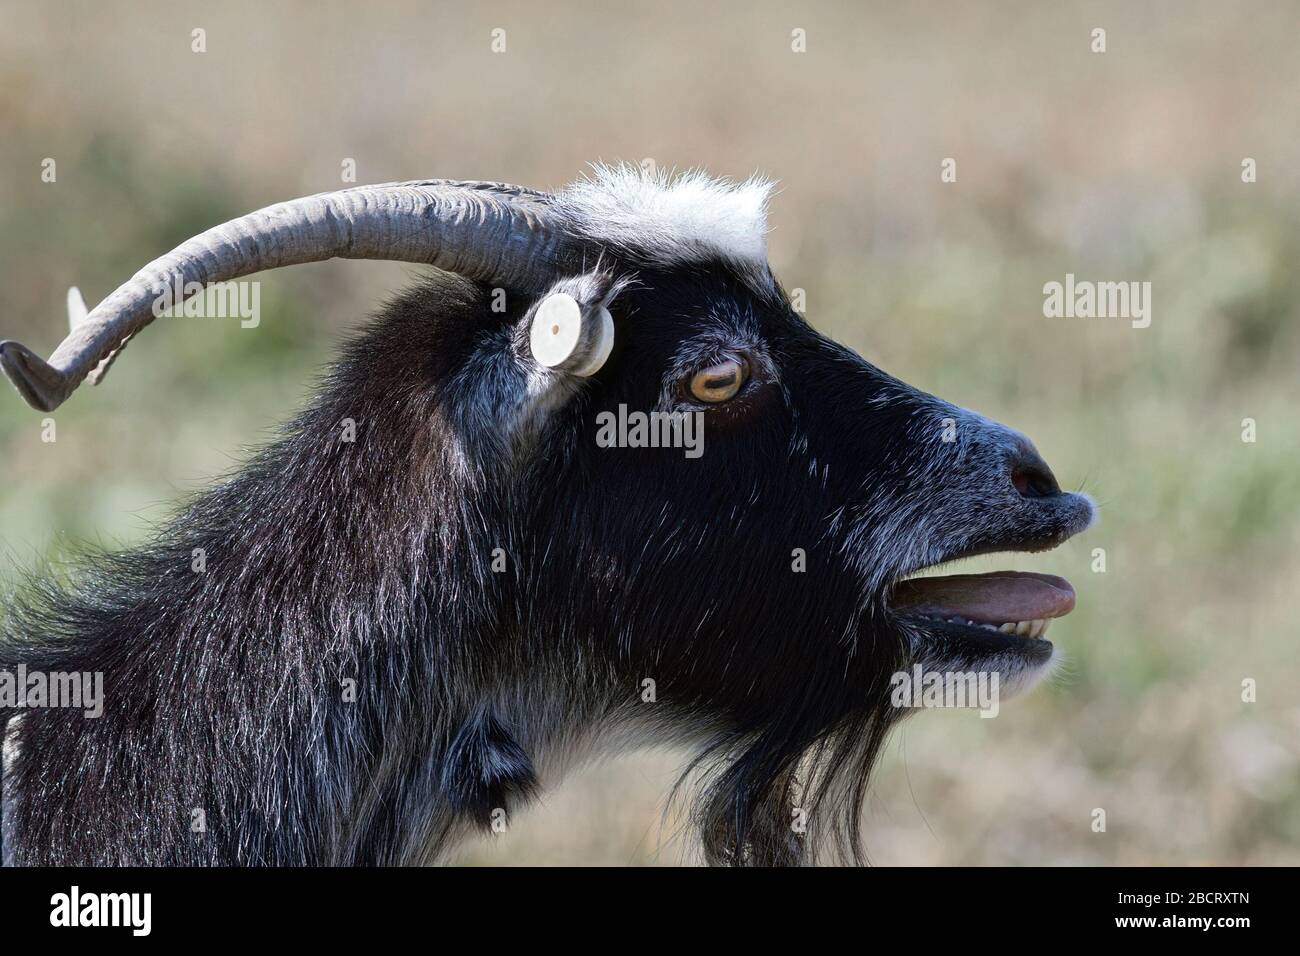 Nervöses billy Ziegenporträt über dem Hintergrund, der nicht im Fokus steht Stockfoto